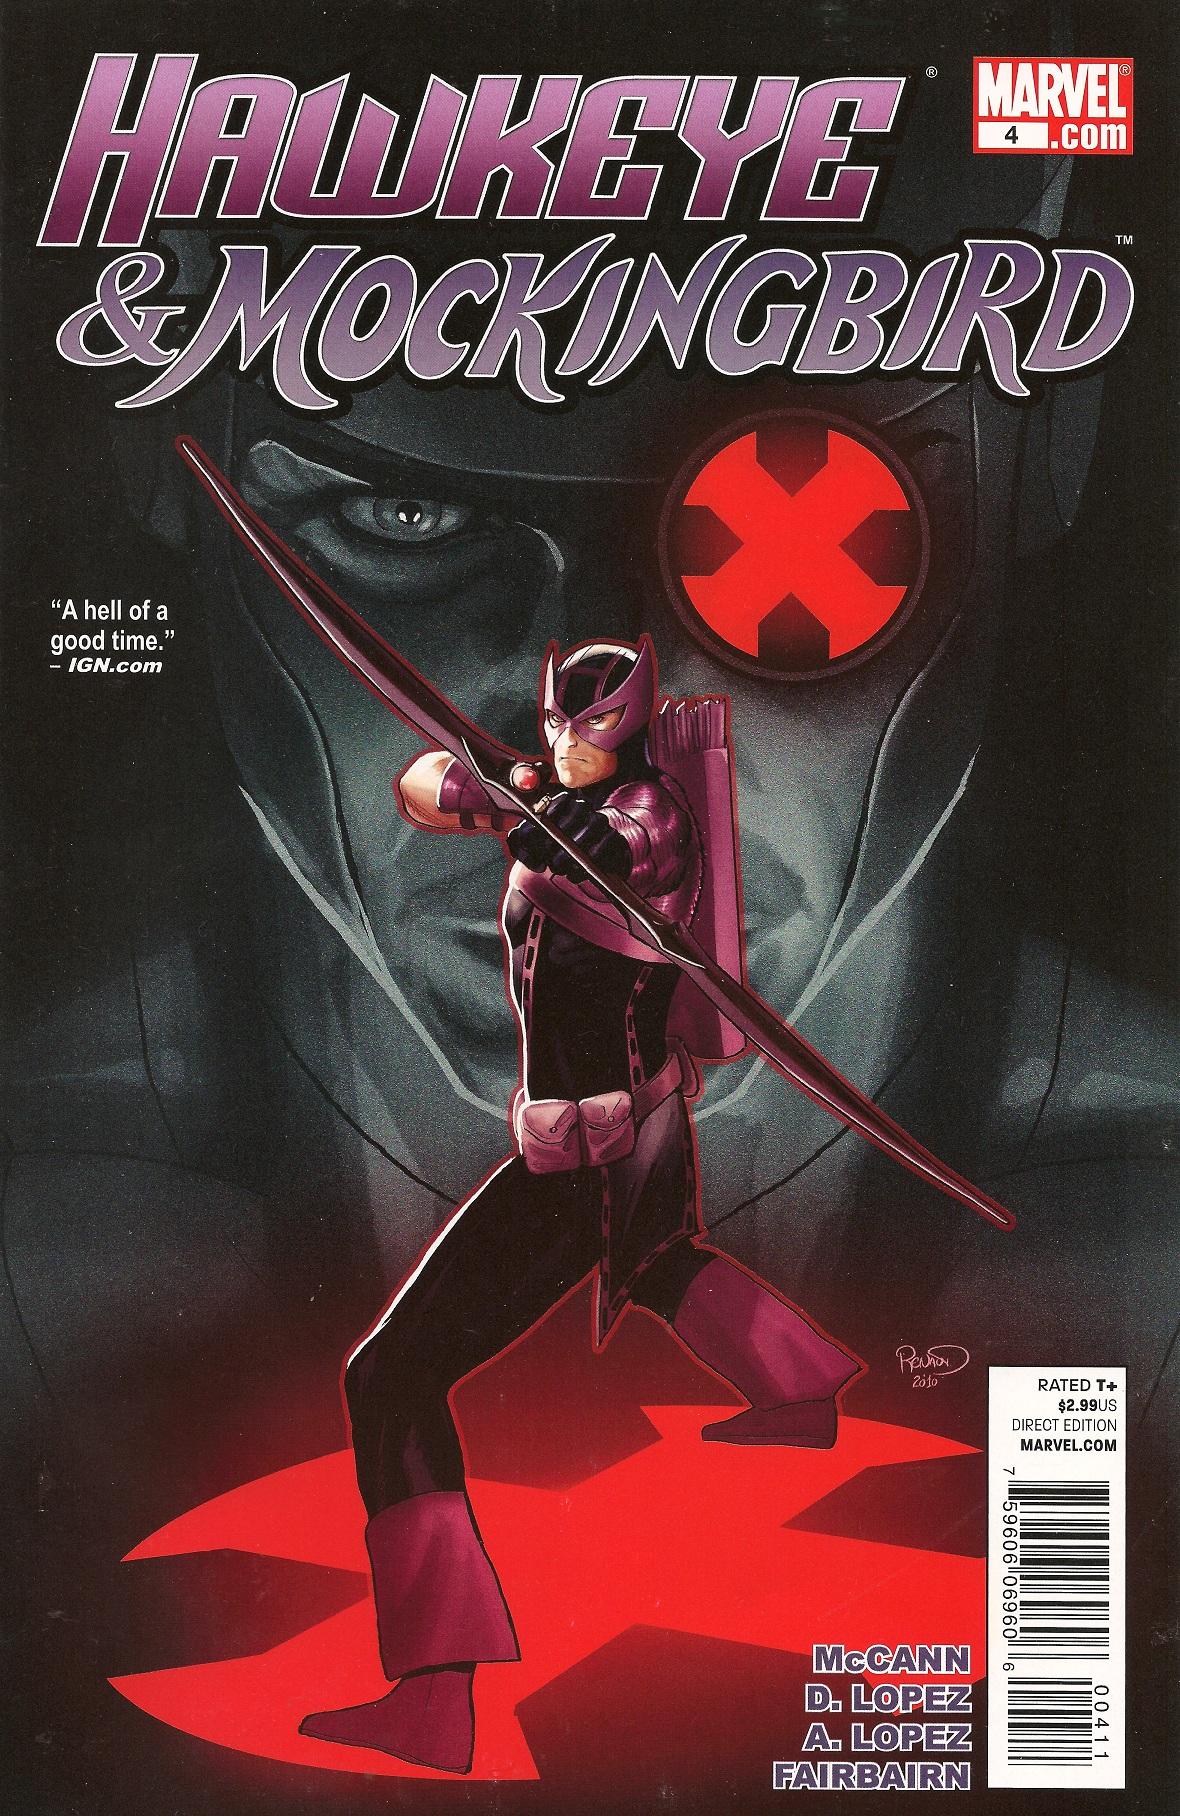 Hawkeye & Mockingbird Vol. 1 #4